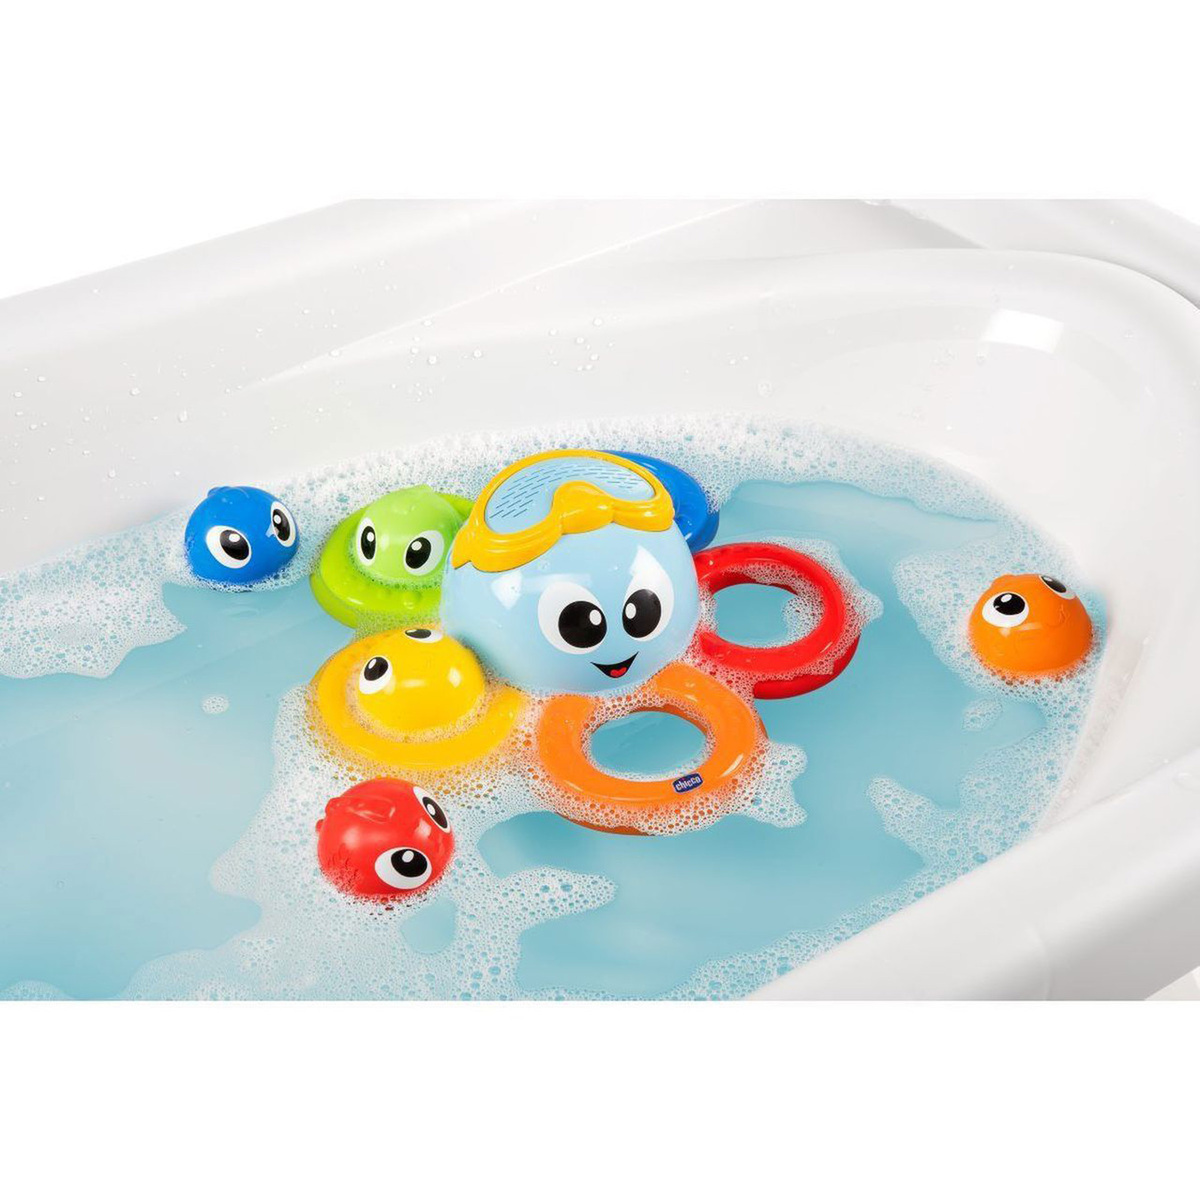 Chicco Gioco Bagno Billy il Polpo Bath Toy, Multi-Coloured, 10037